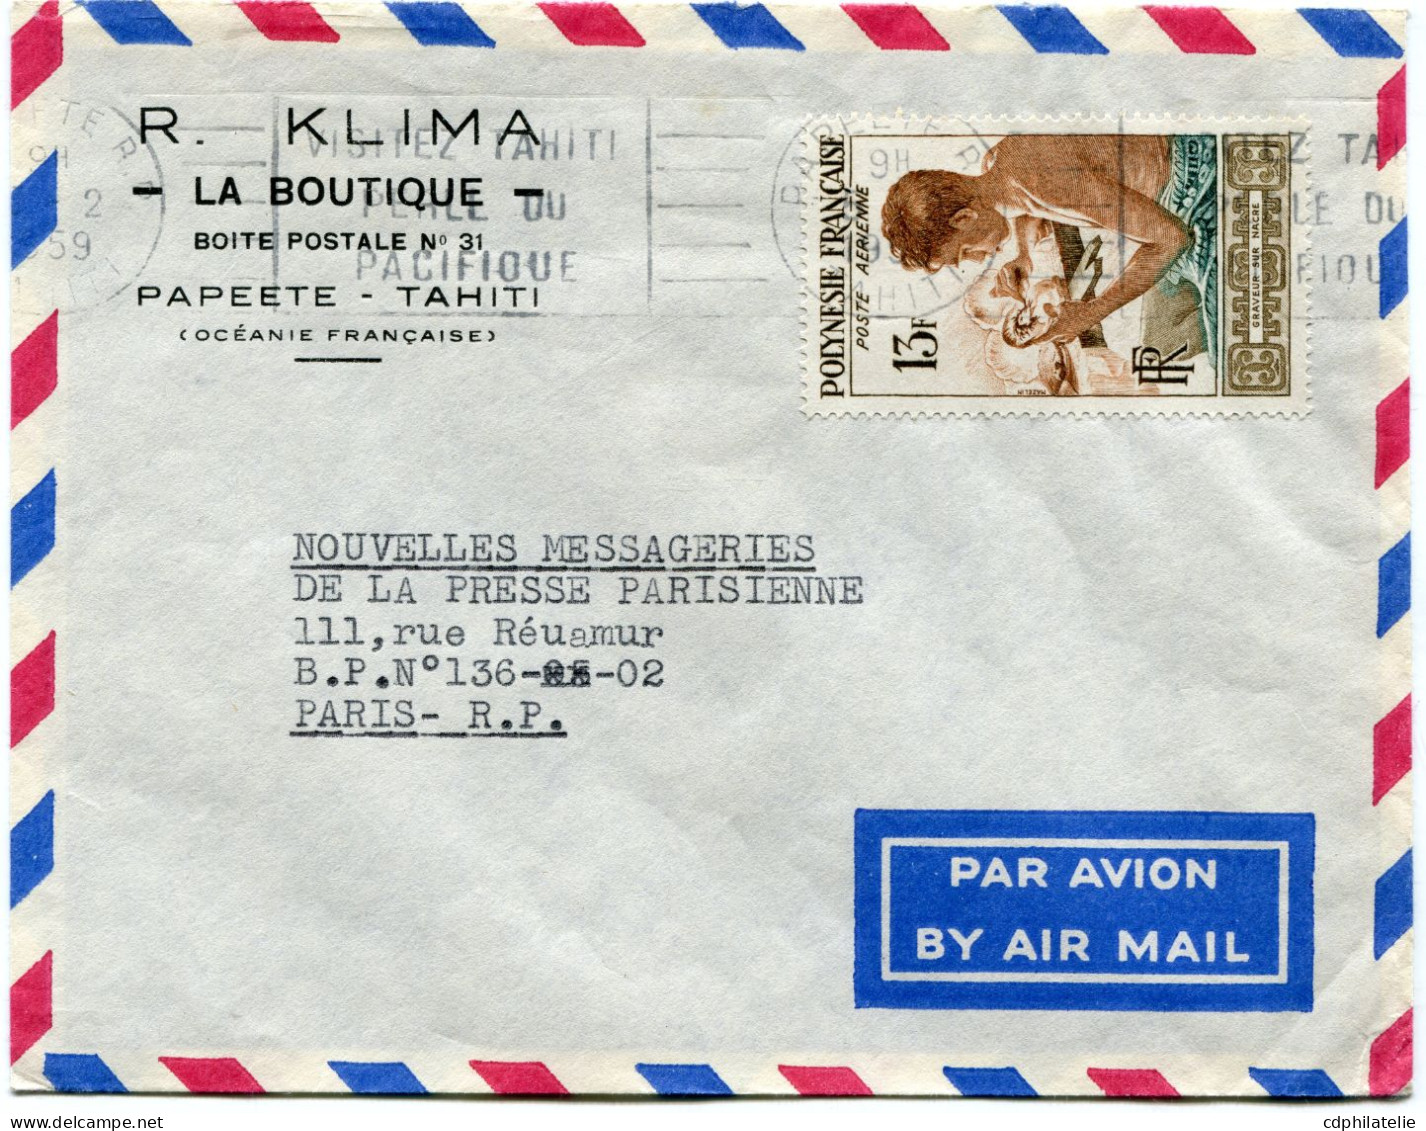 POLYNESIE FRANCAISE LETTRE PAR AVION DEPART PAPEETE 5-2-1959 POUR LA FRANCE - Briefe U. Dokumente